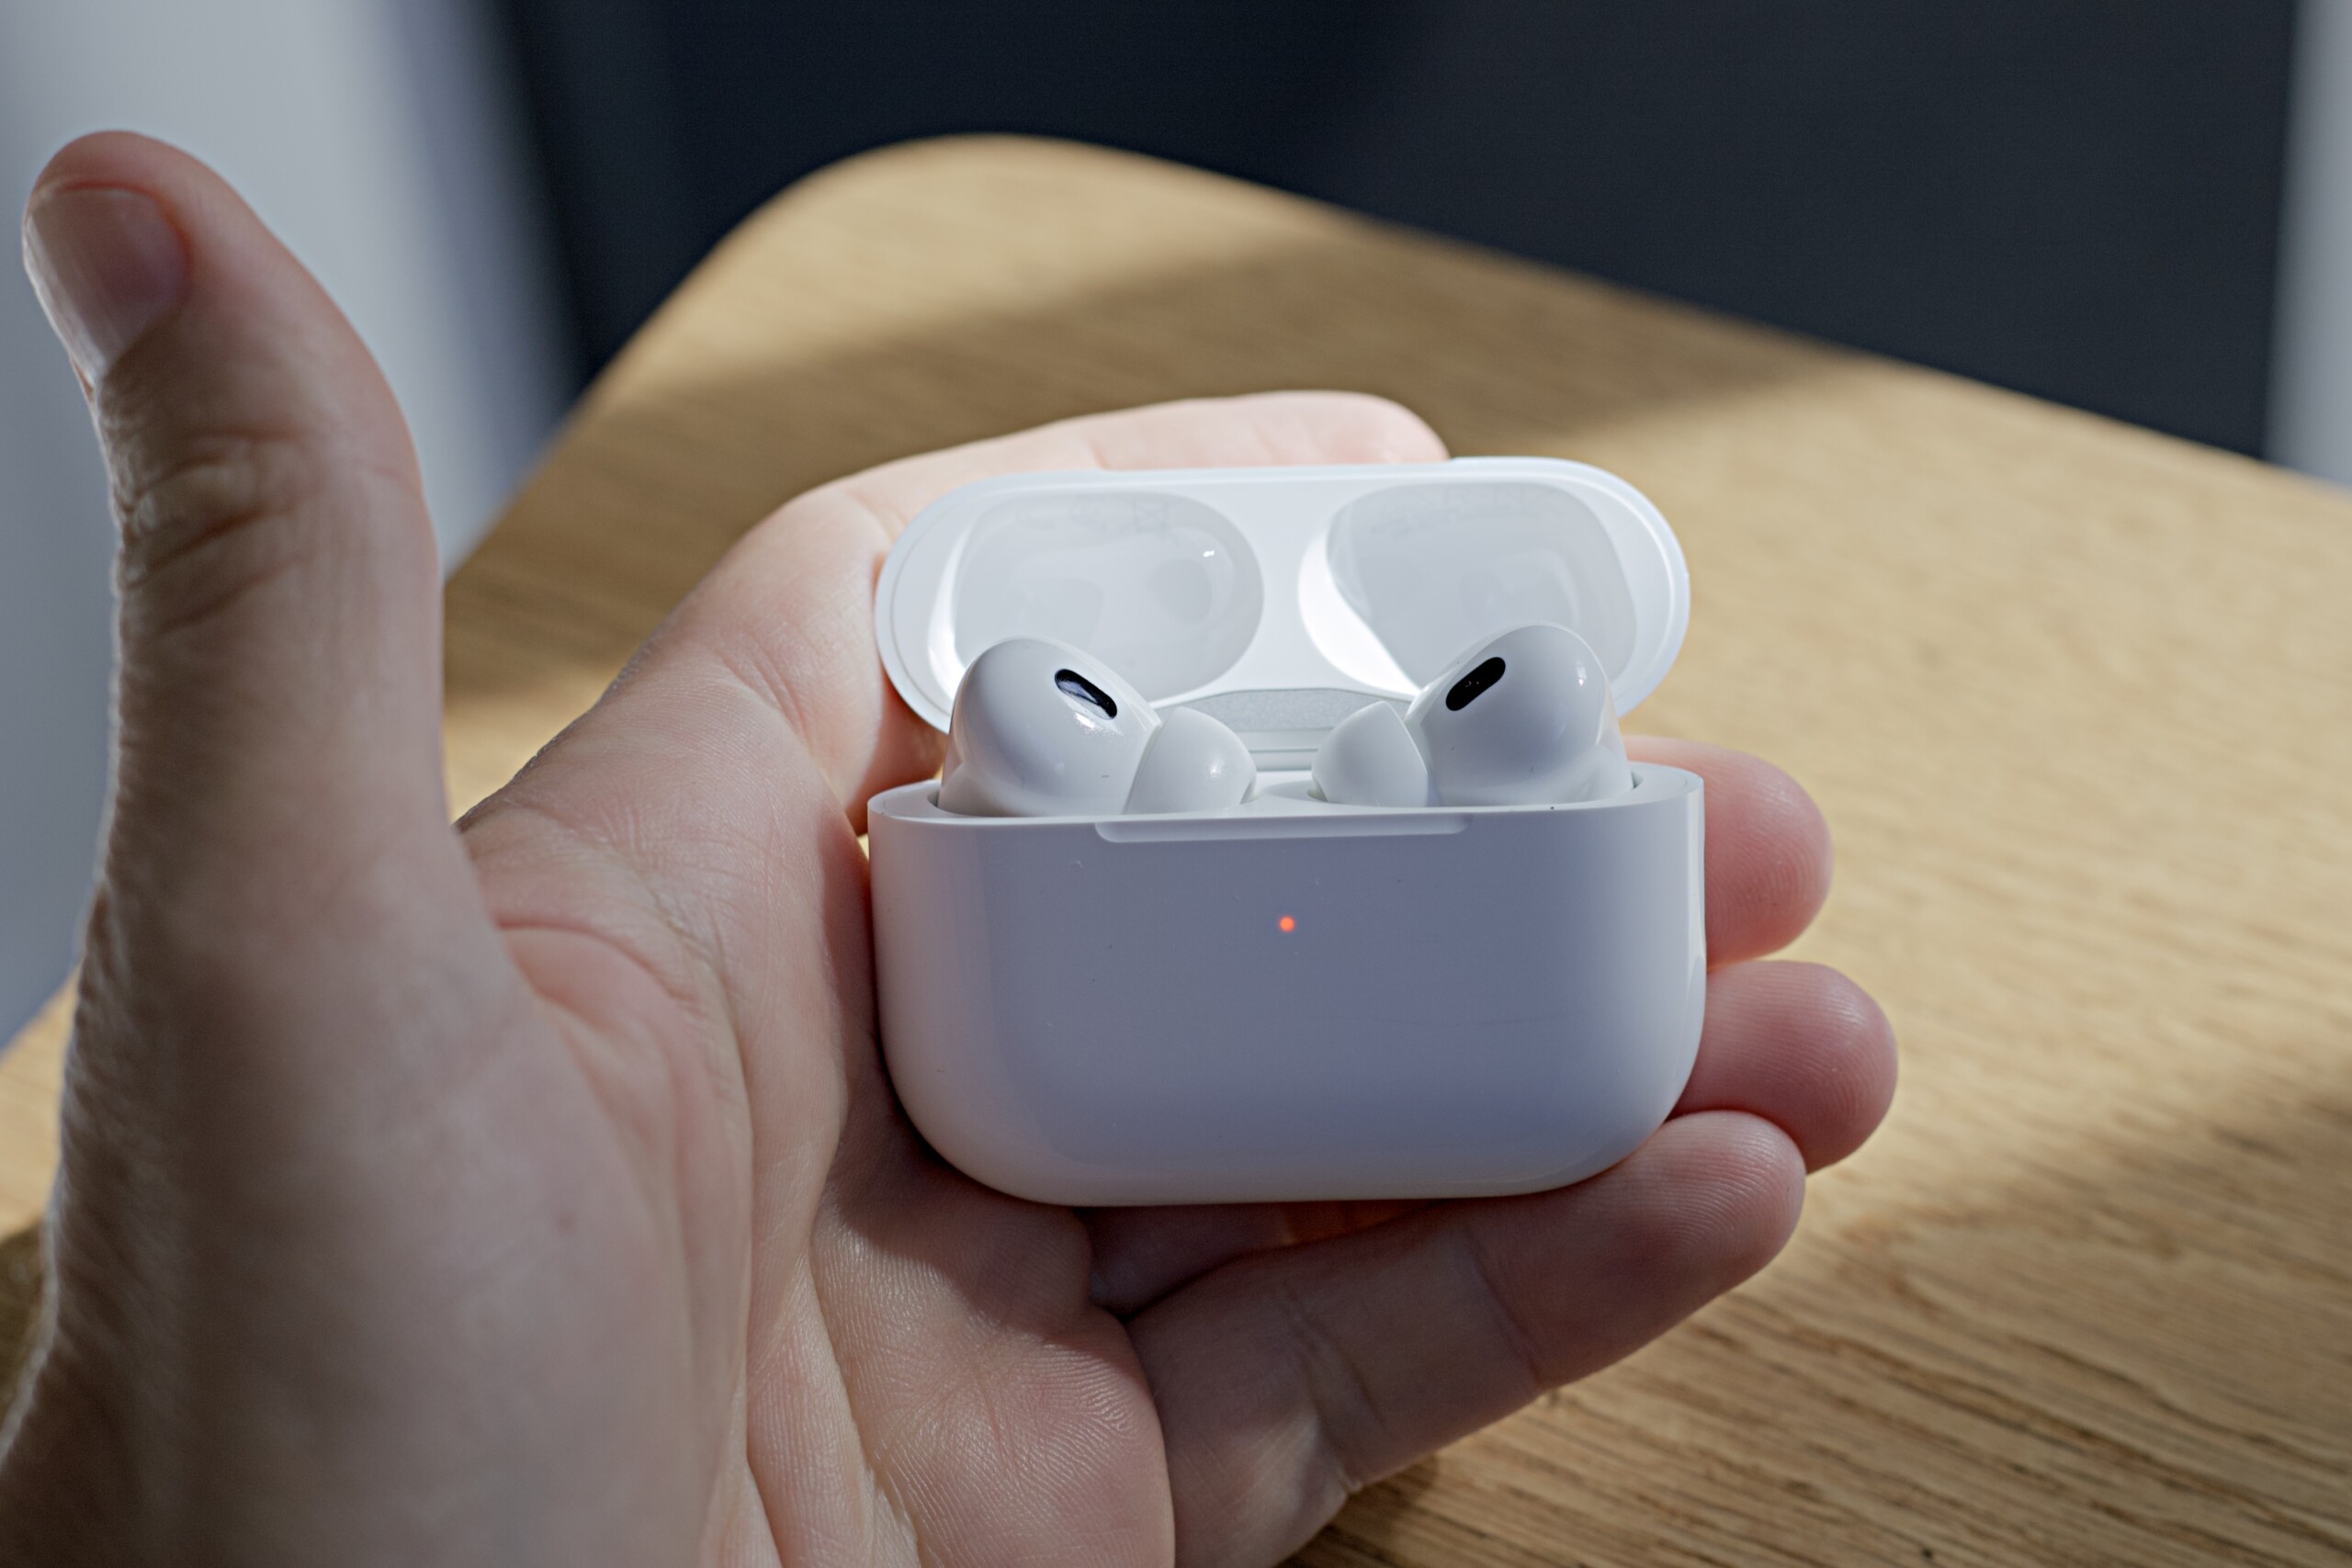 Test Apple AirPods Pro 2 (Lightning) : notre avis complet - Casques et  écouteurs - Frandroid